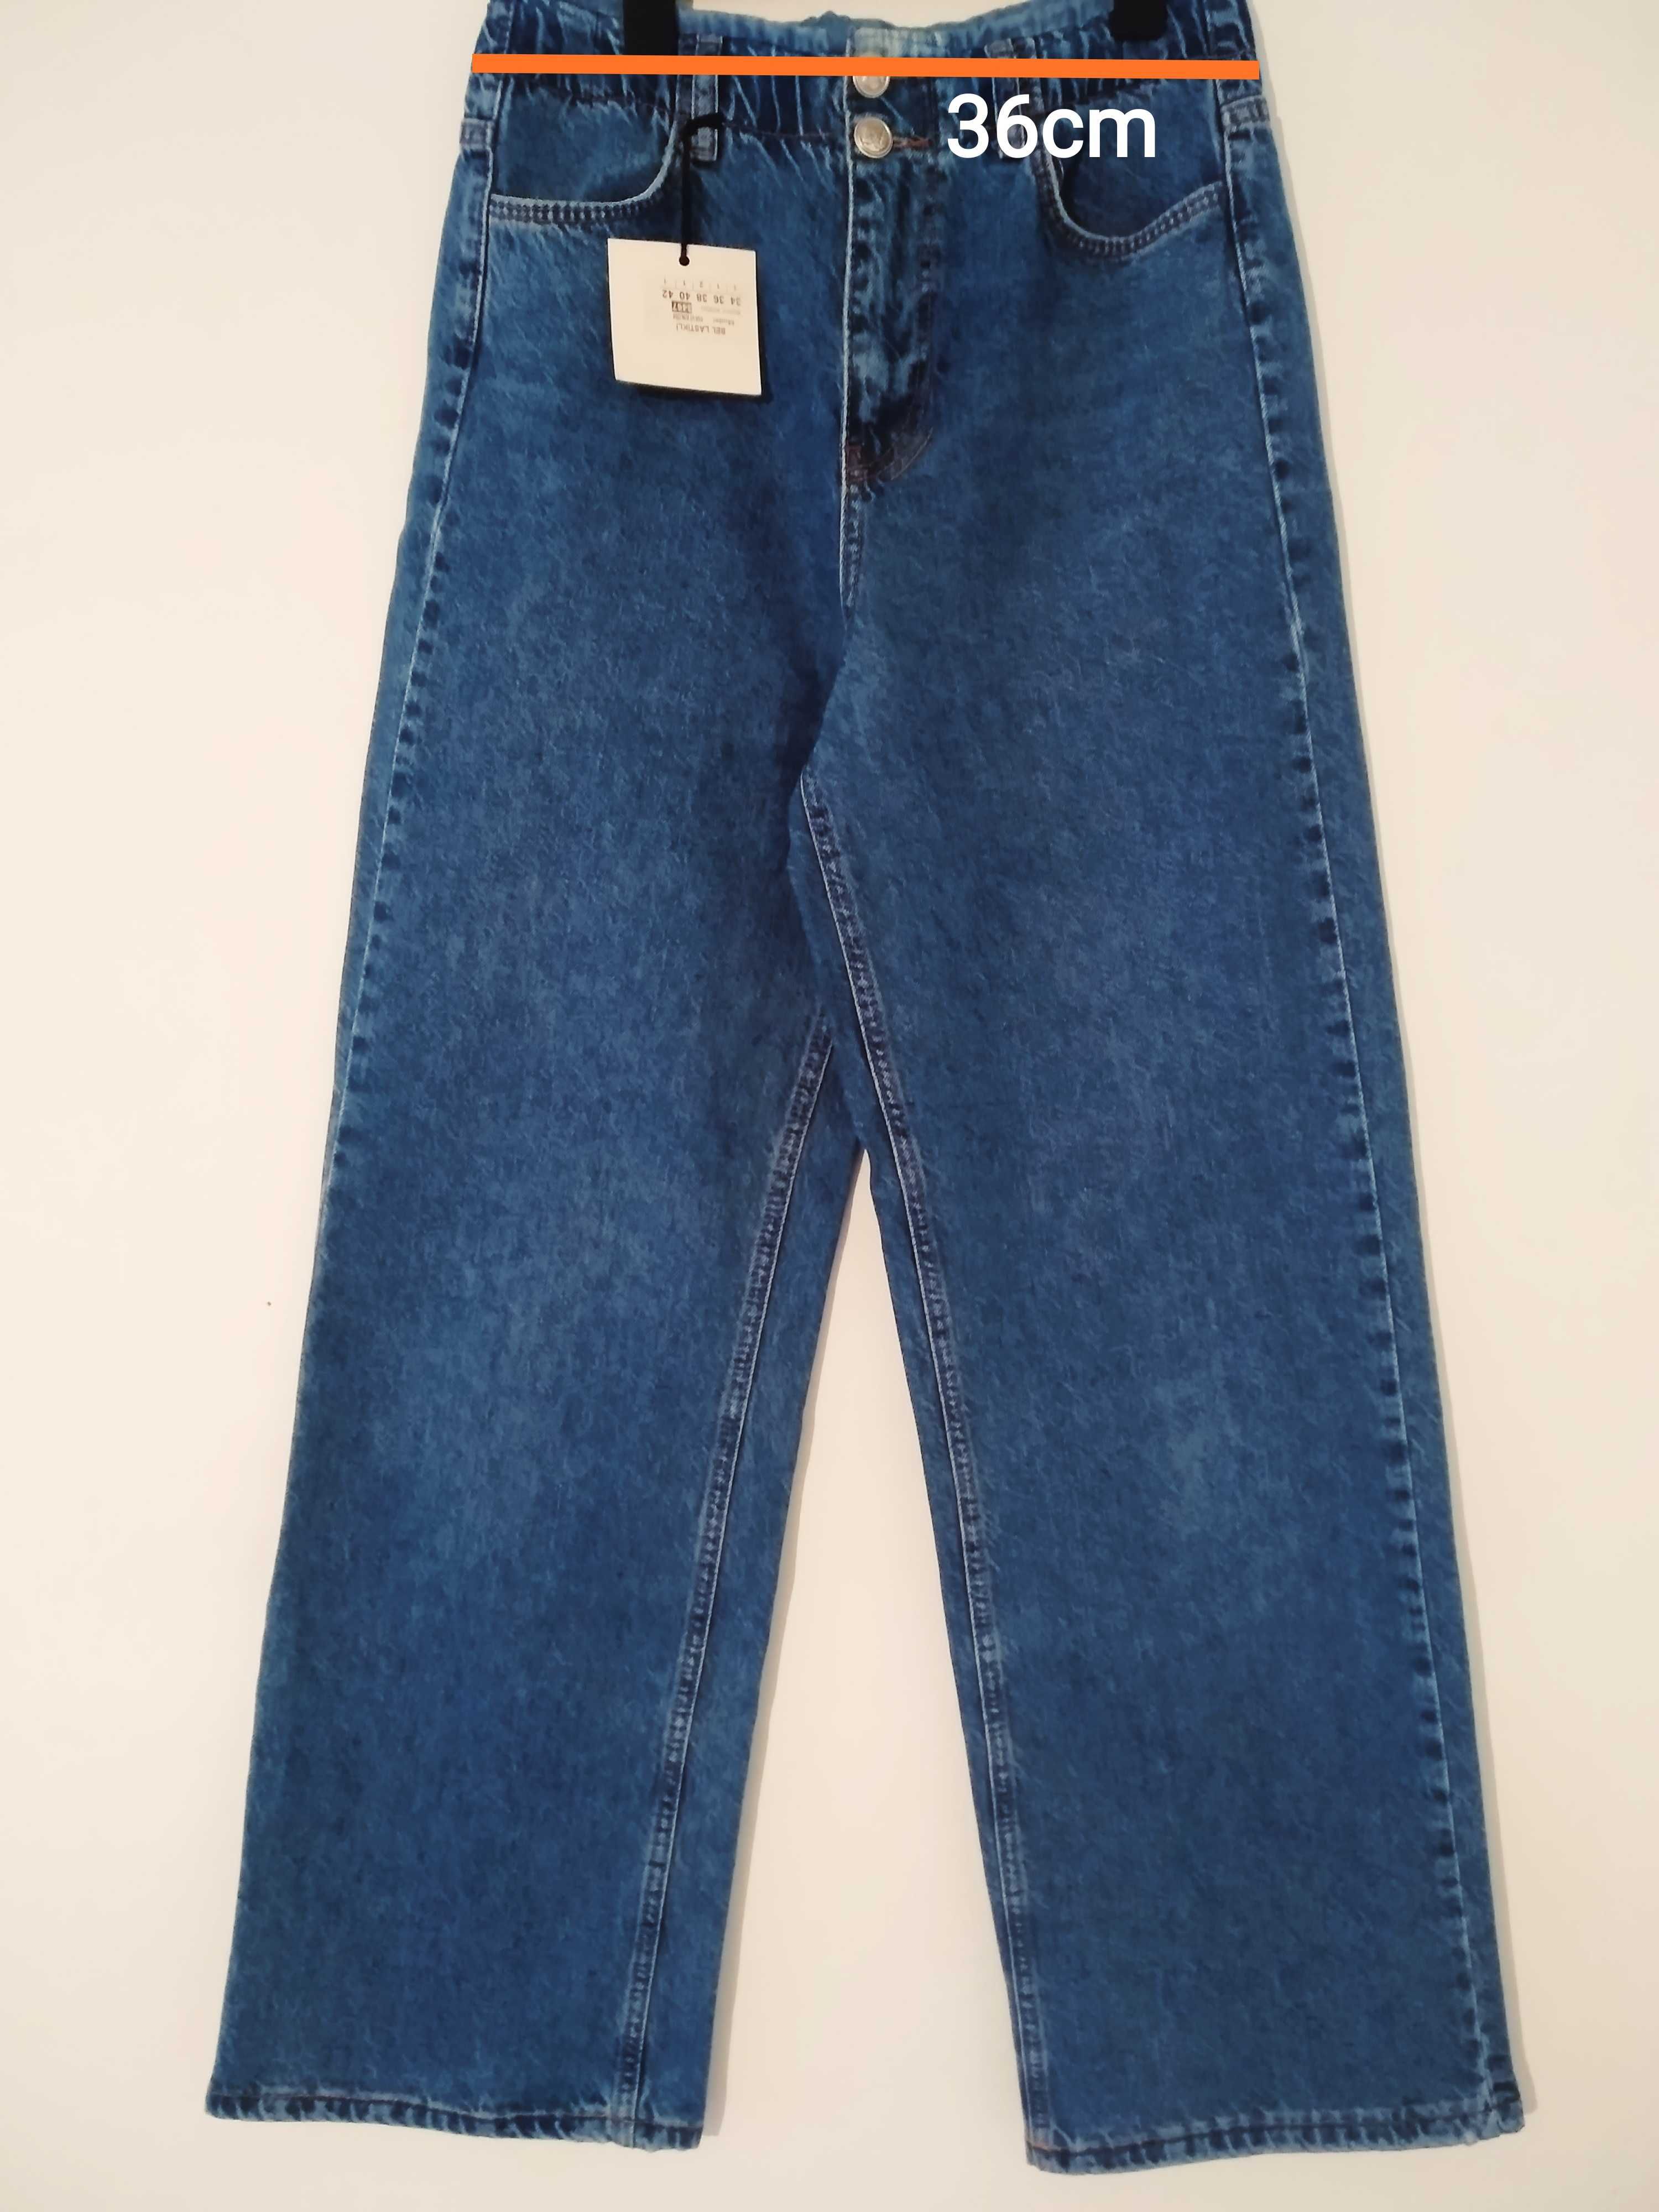 широкие джинсы палаццо турецкие С (36)